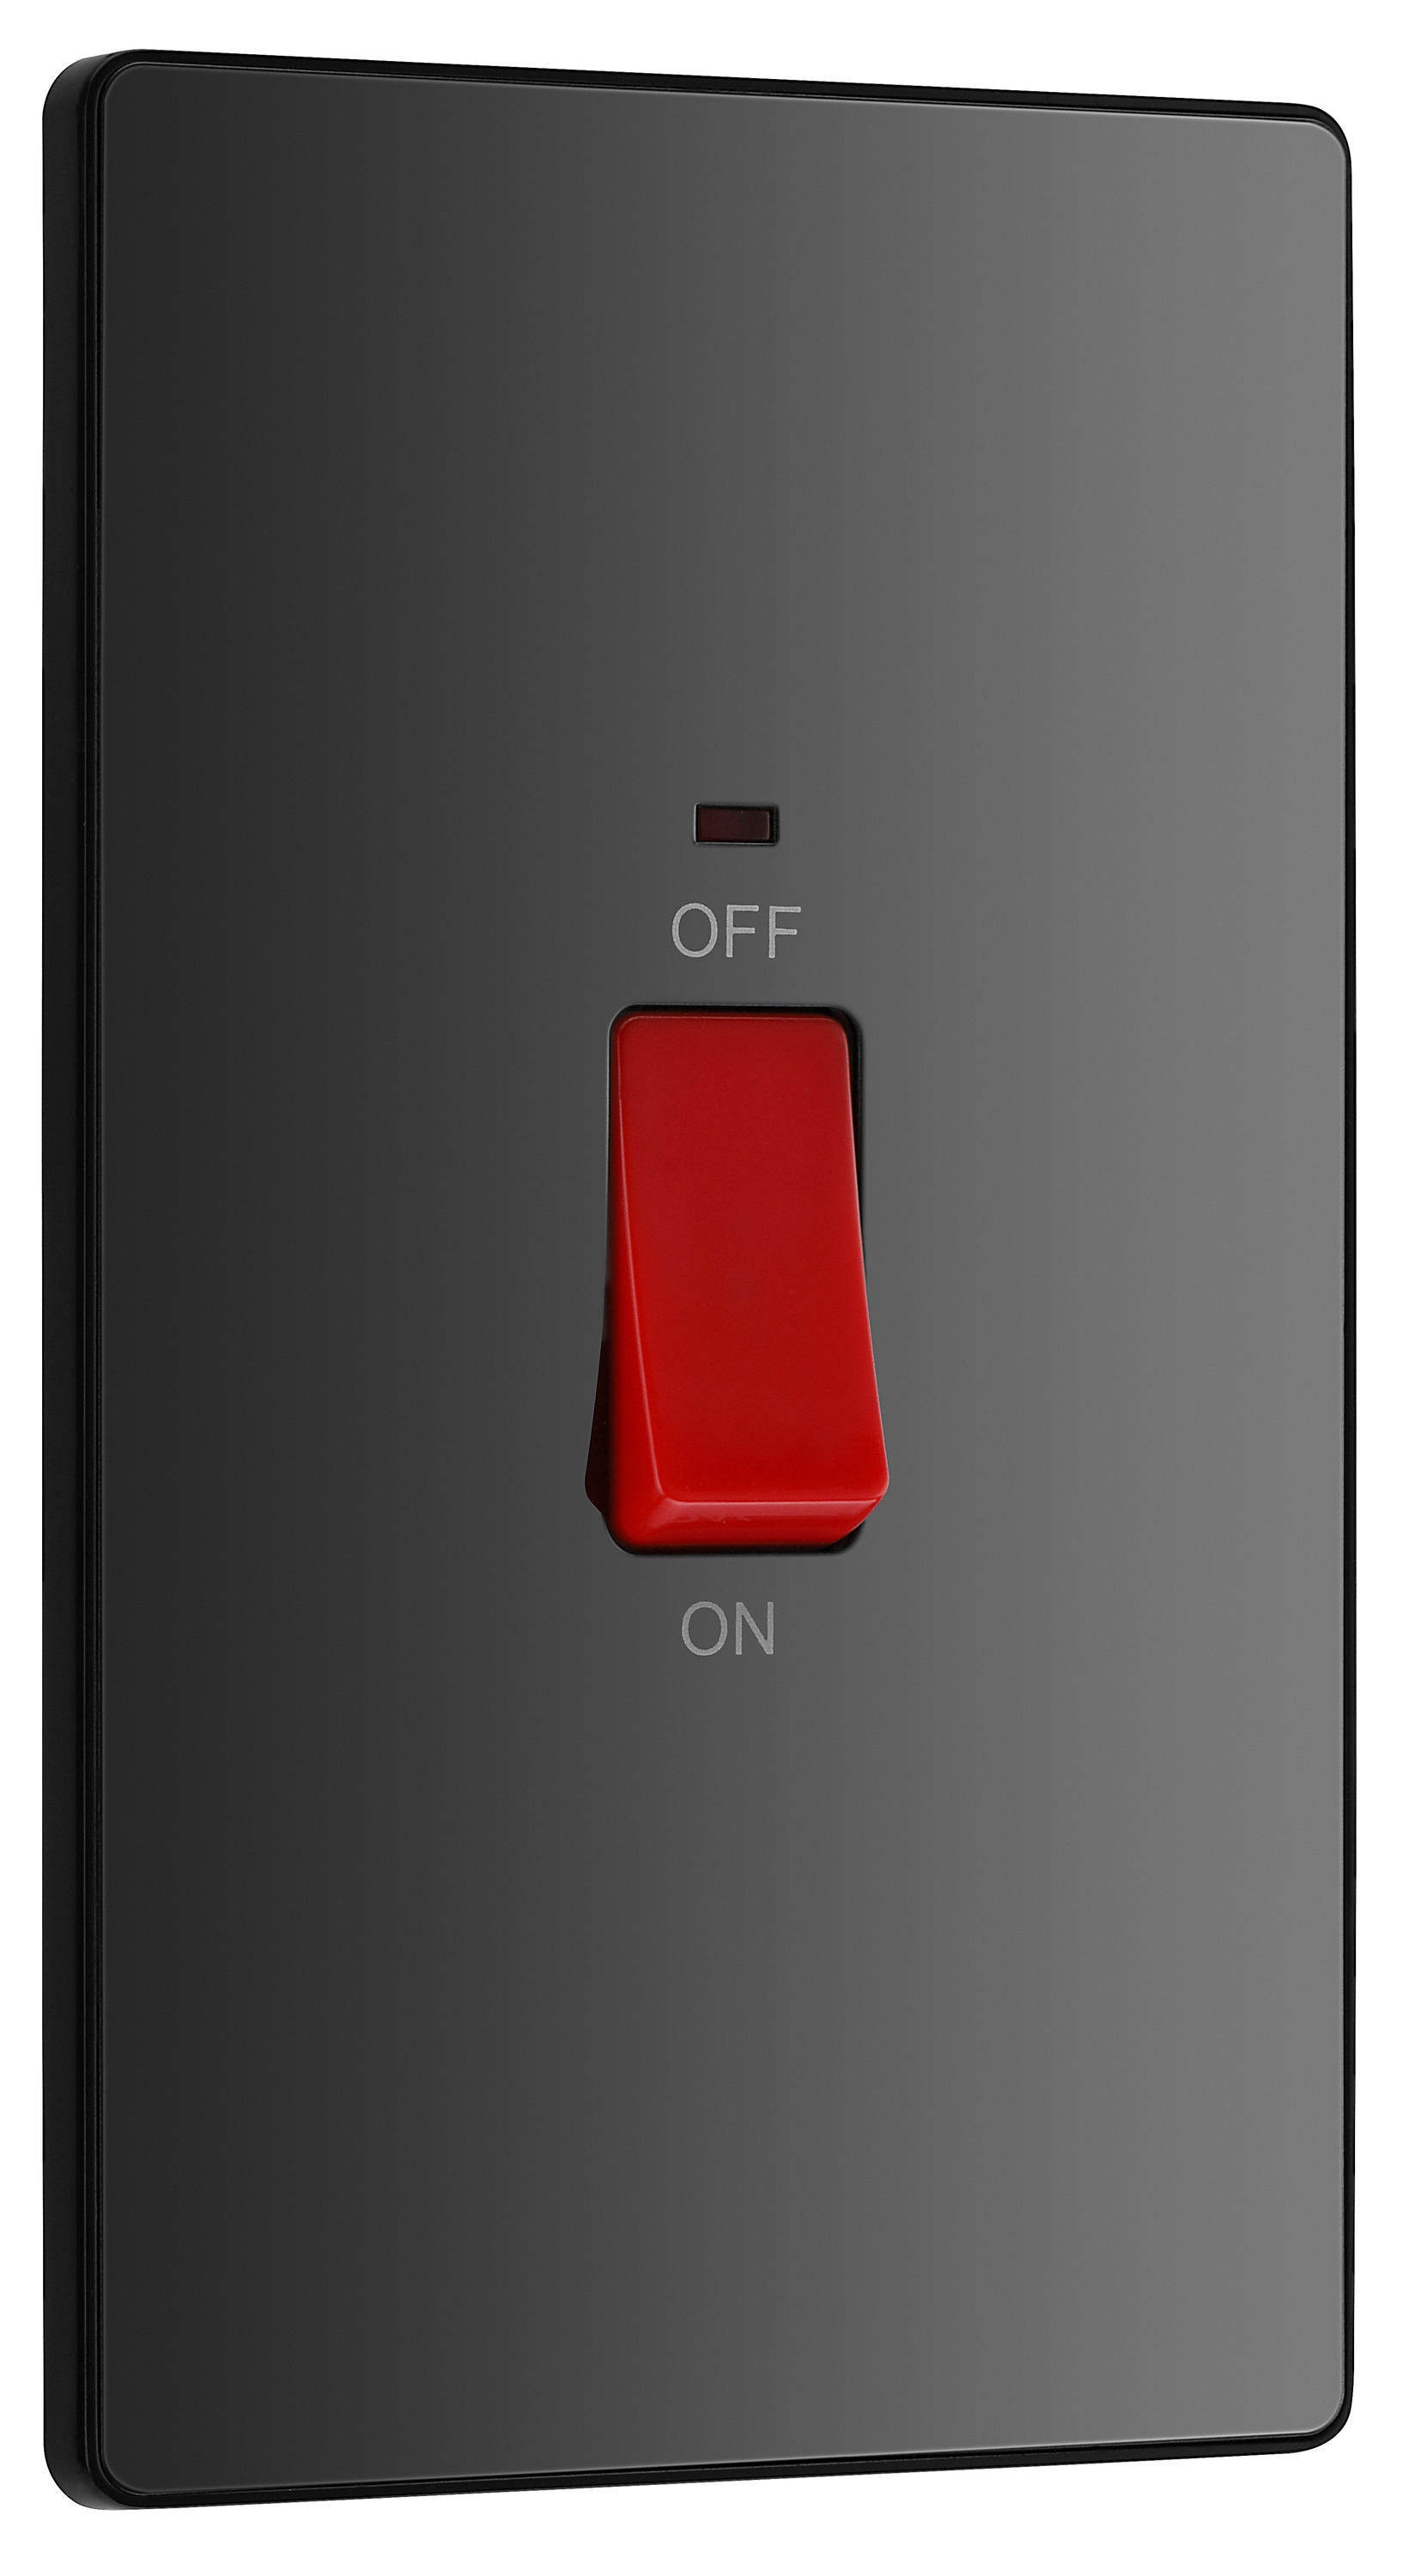 Image of BG Evolve Black Chrome 45A Rectangular Double Pole Switch with Led Power Indicator